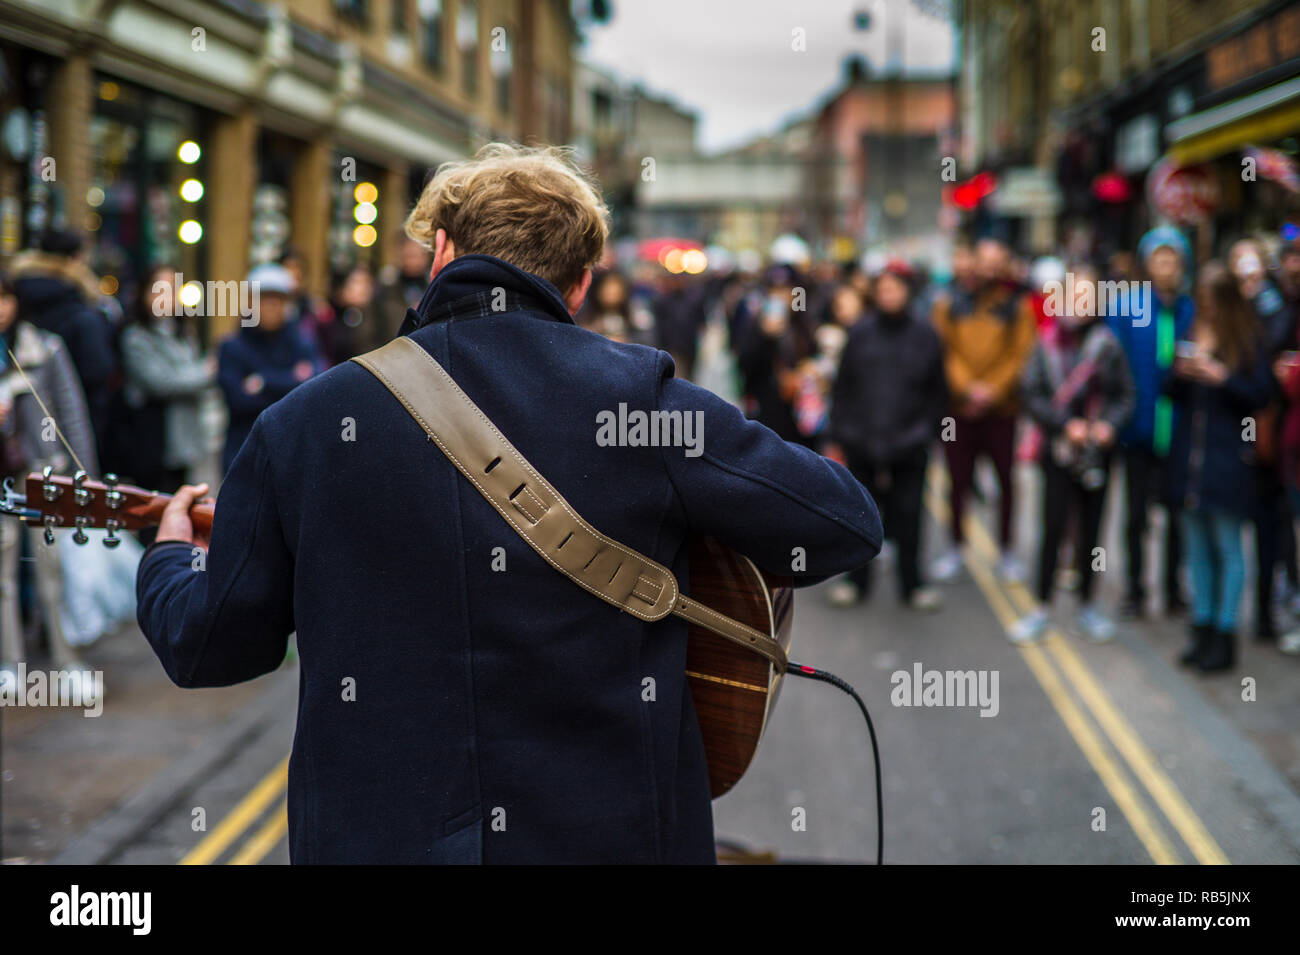 Musicien ambulant Brick Lane Market - un musicien de rue divertit les foules au le marché du dimanche sur la célèbre London Brick Lane. Banque D'Images